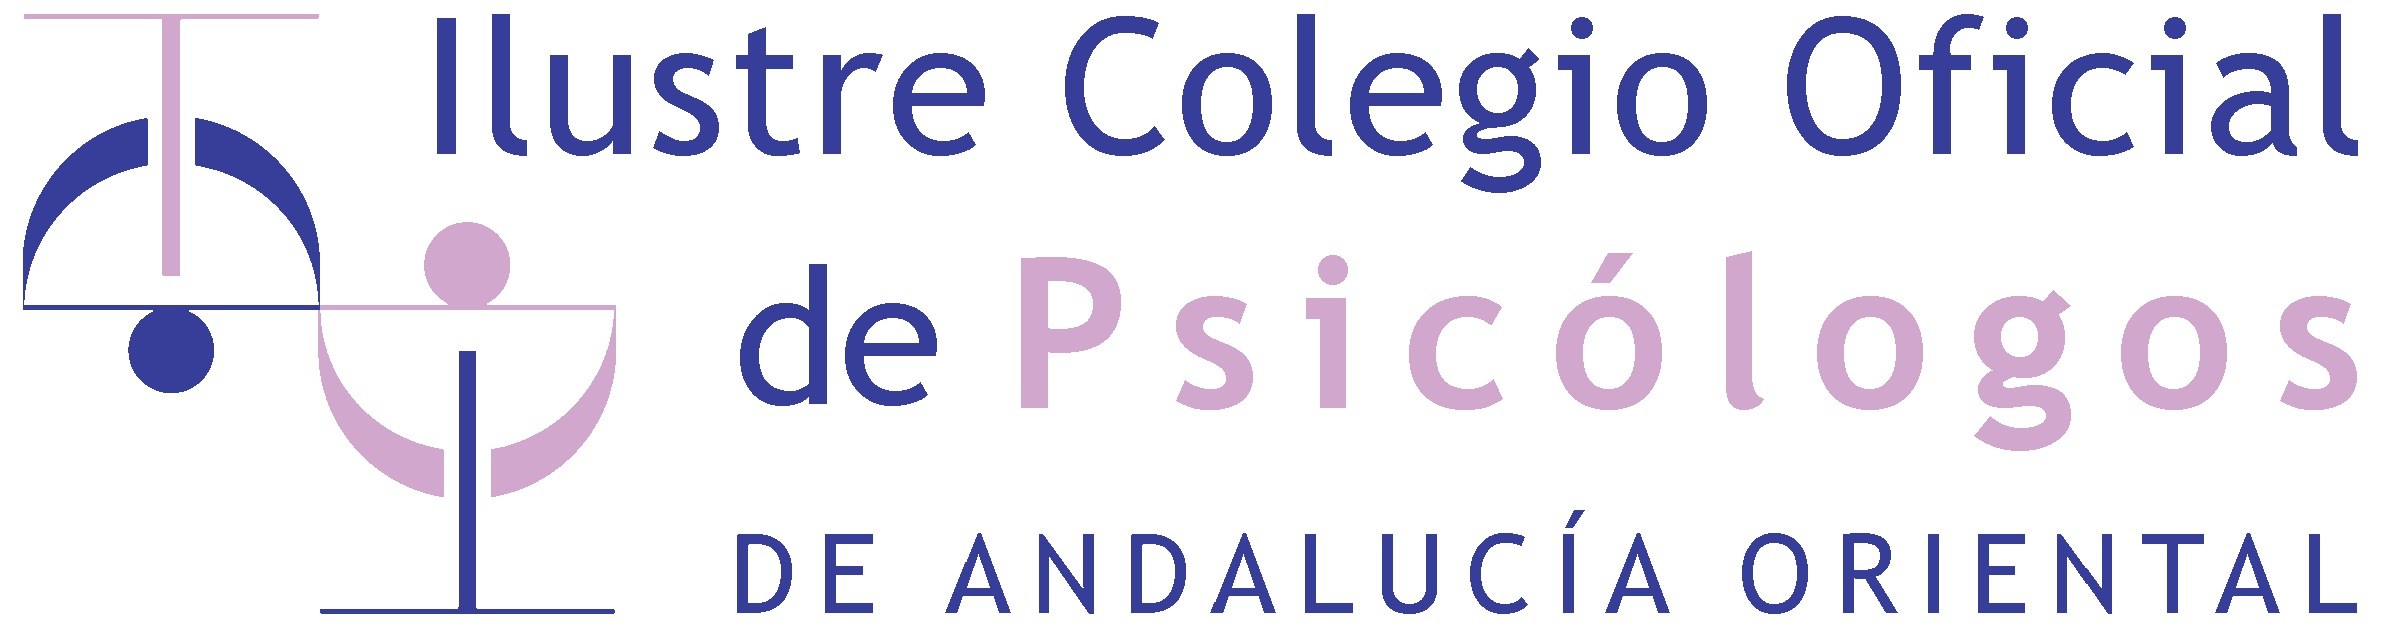 Ilustre colegio oficial de psicología de Andalucía oriental